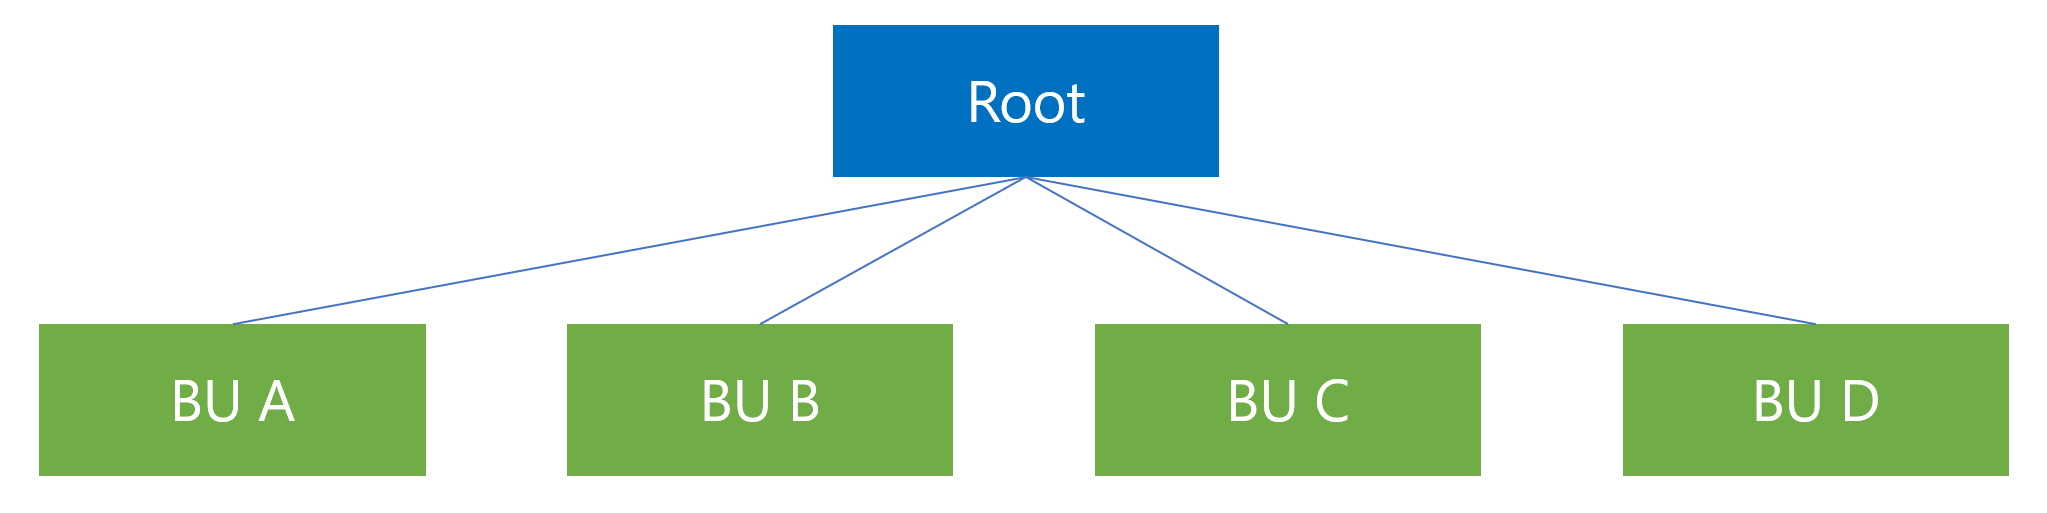 Primer strukture poslovne jedinice sa nadređenom poslovnom jedinicom Org na vrhu i podređenim poslovnim jedinicama od A do D.